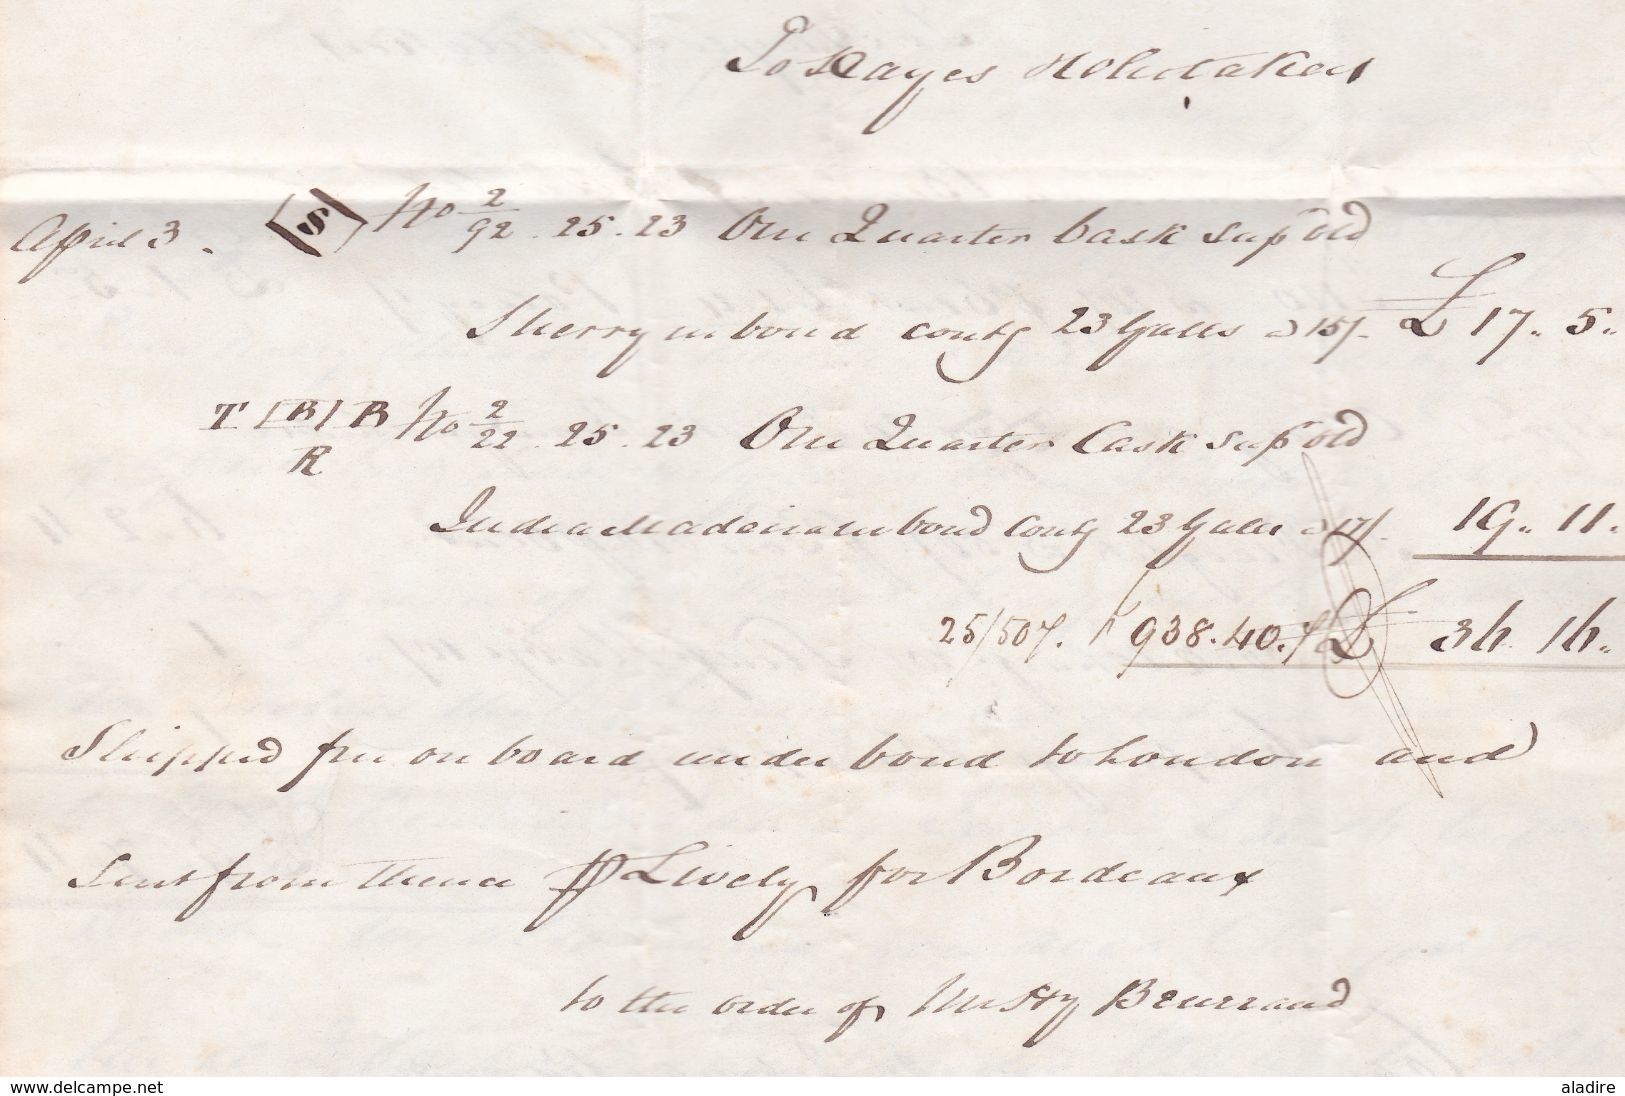 1846 - Lettre pliée avec corresp 4 pages en anglais de HULL, Angleterre, GB vers COGNAC, France via Londres